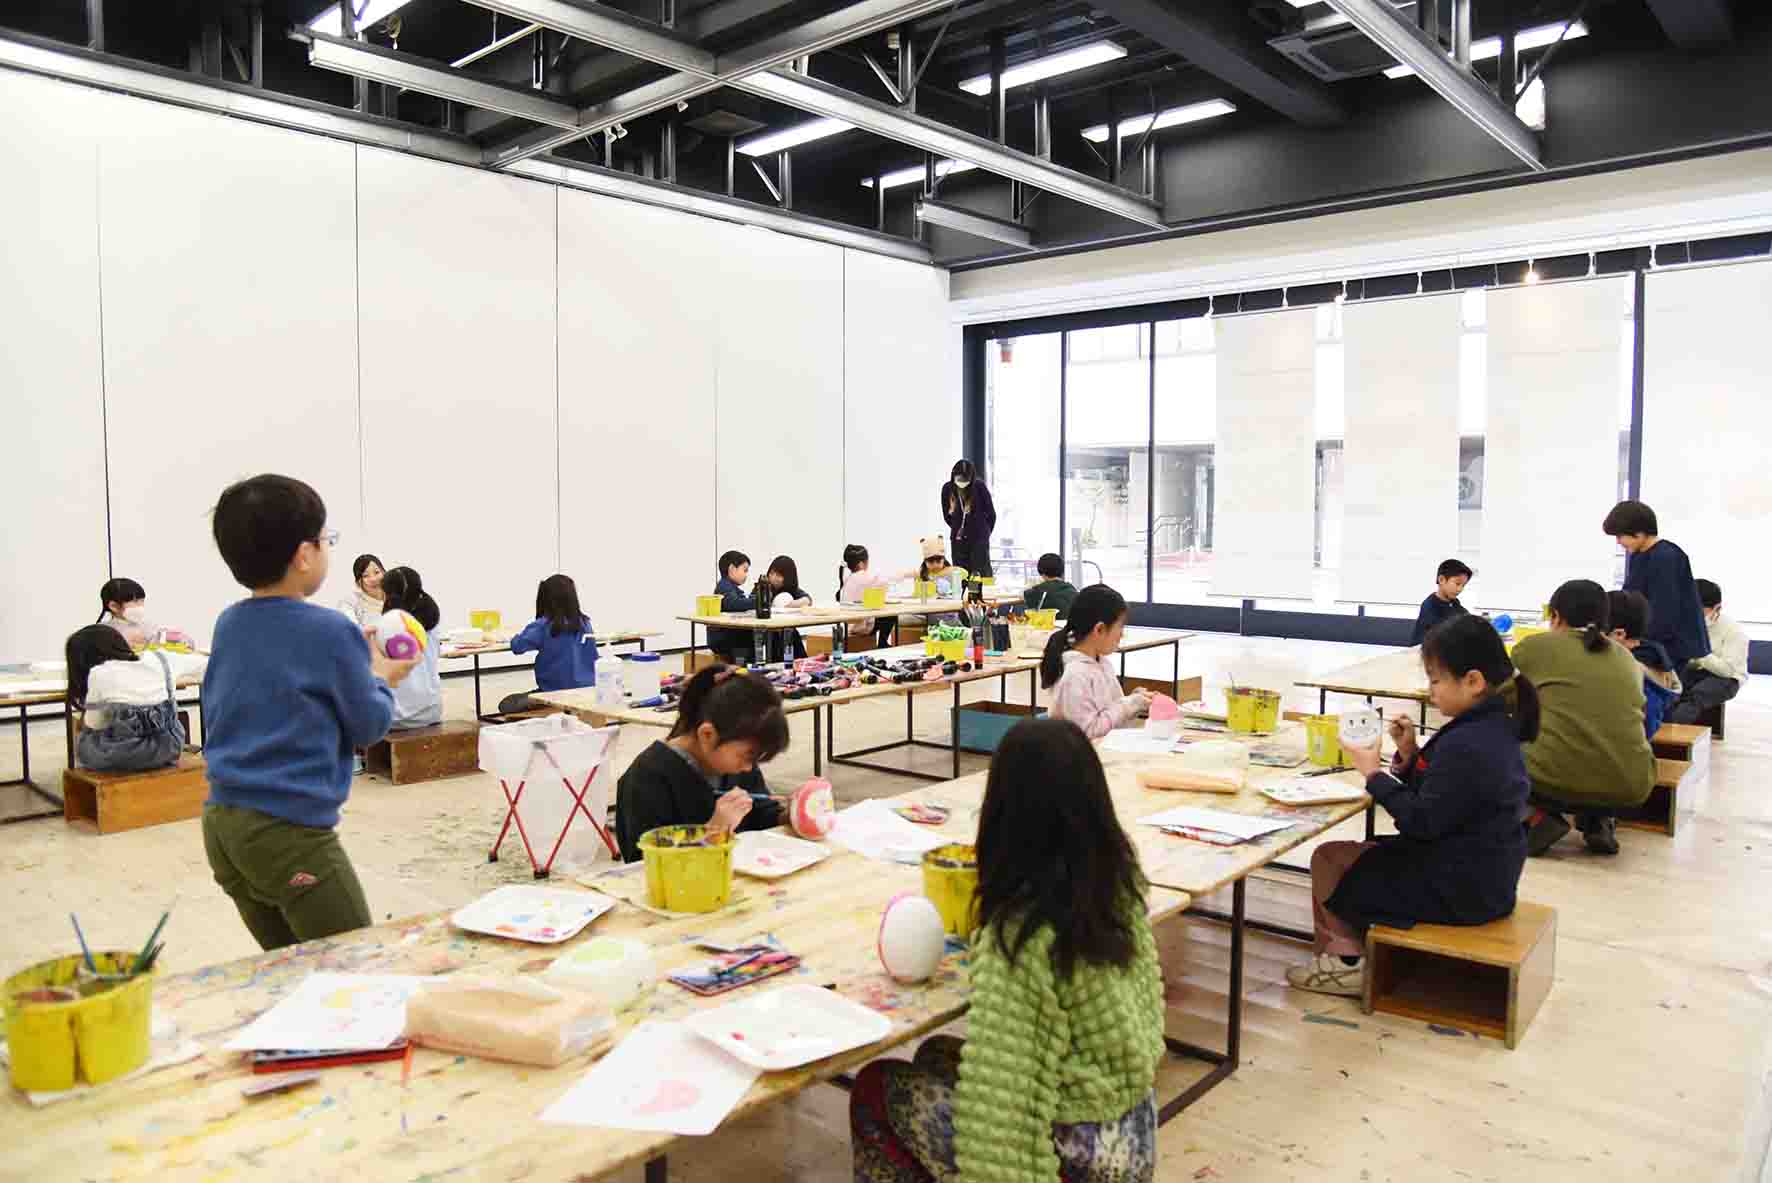 お茶の水美術学院の教室を使用したOCHABI junior schoolキッズ科アトリエコースの授業の様子